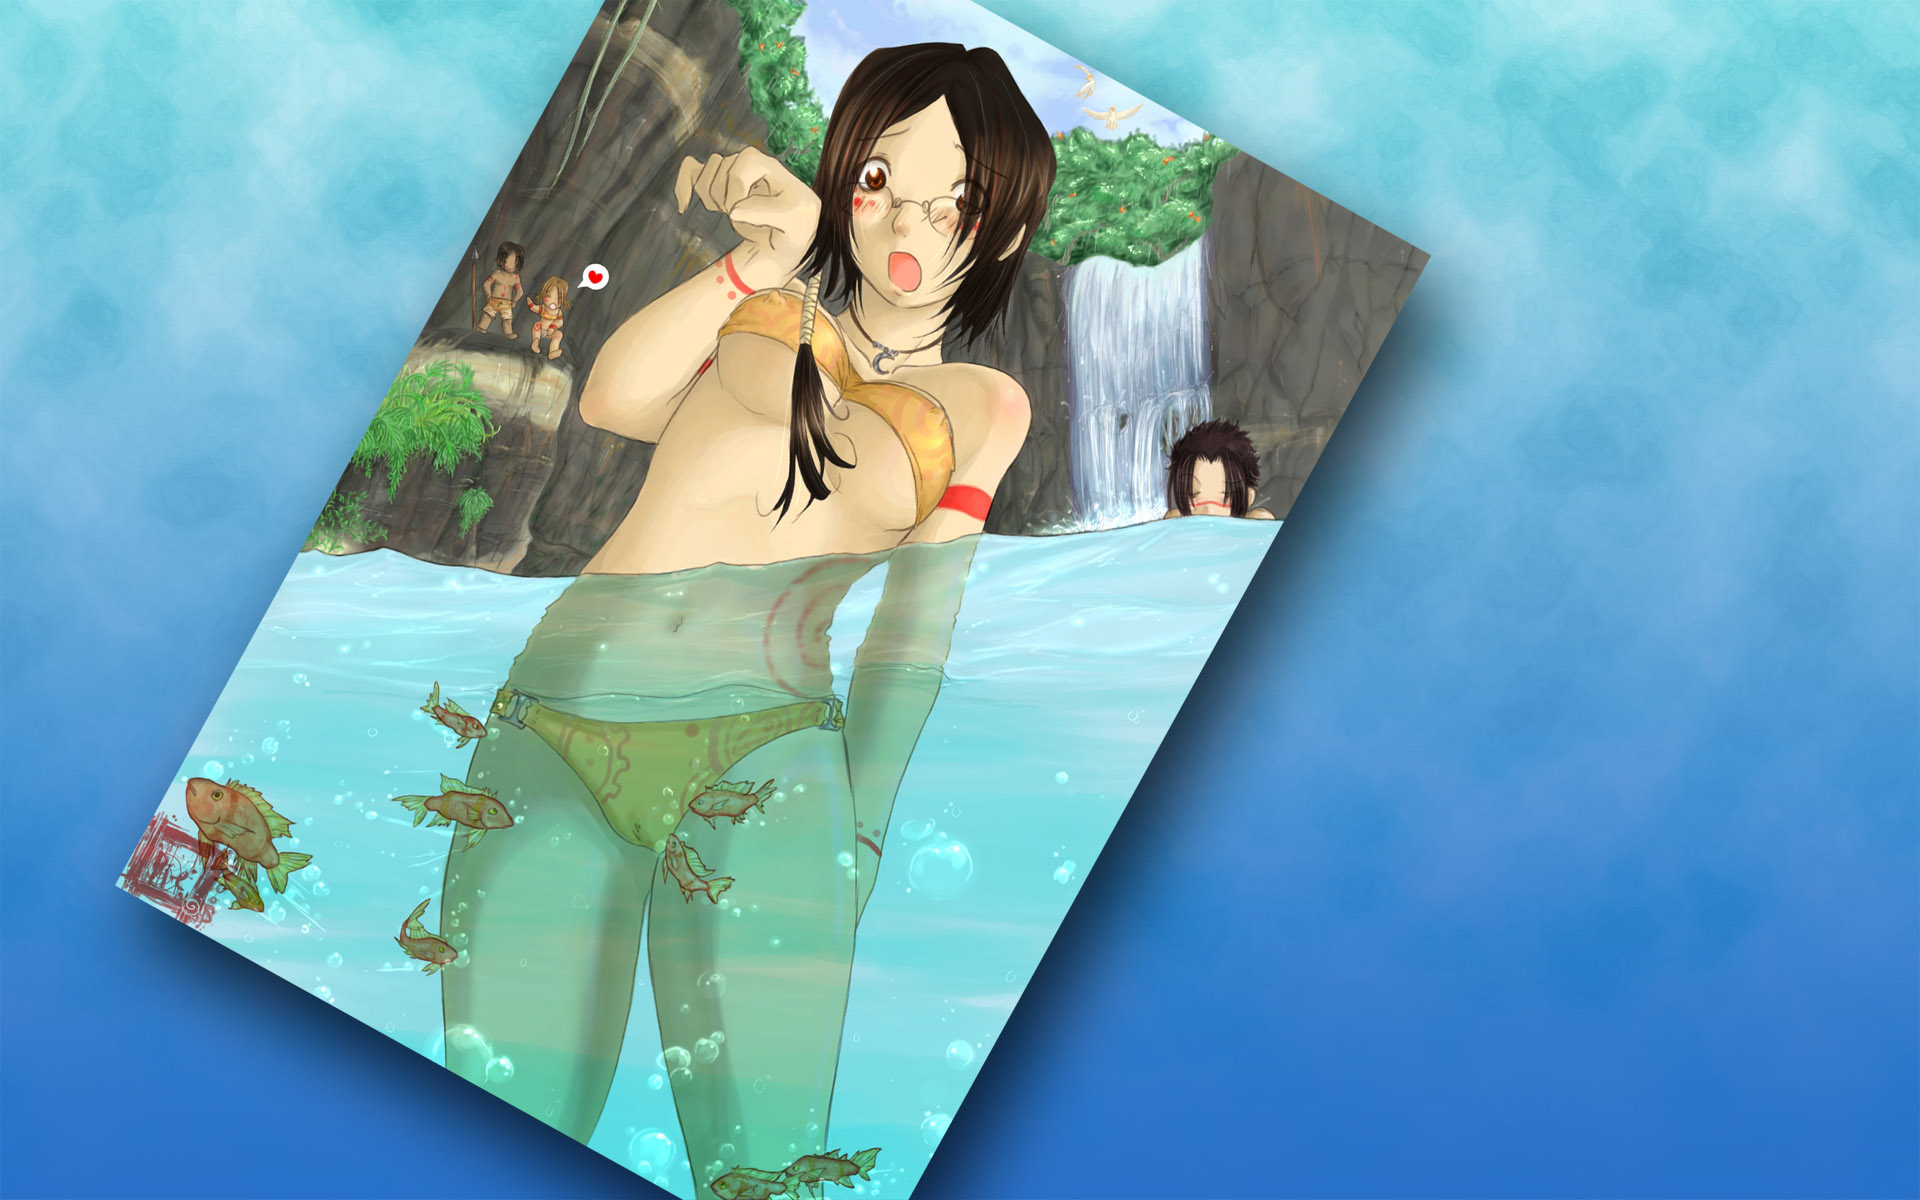 3d обои купание девушки в воде с рыбами, вокруг нее ее друзья, позади - водопад  эмо # 89699